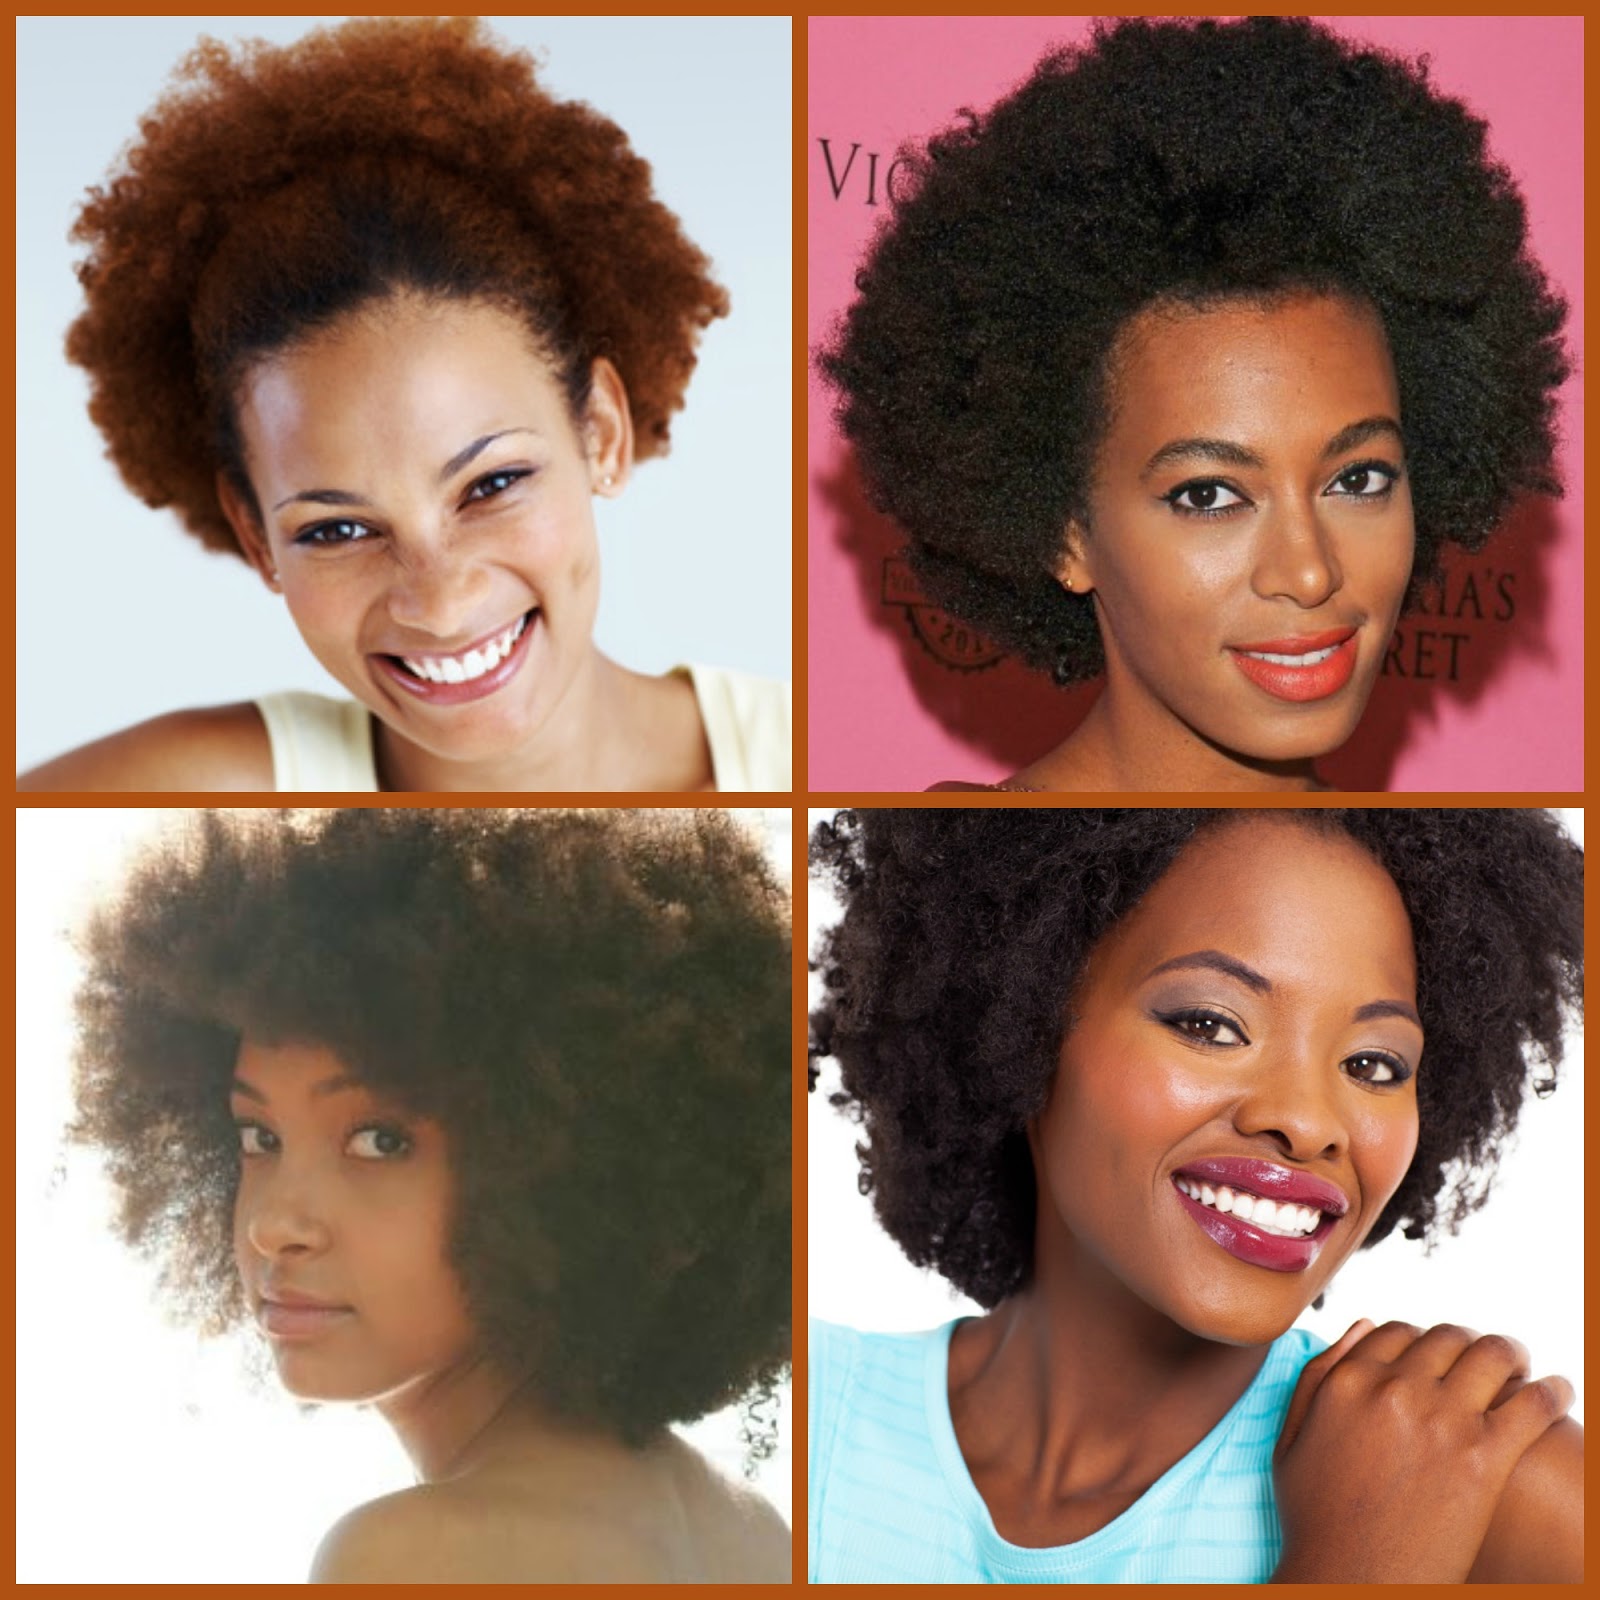 cabelos tipo 4b e 4c - como cuidar? ~ cabelos africanos